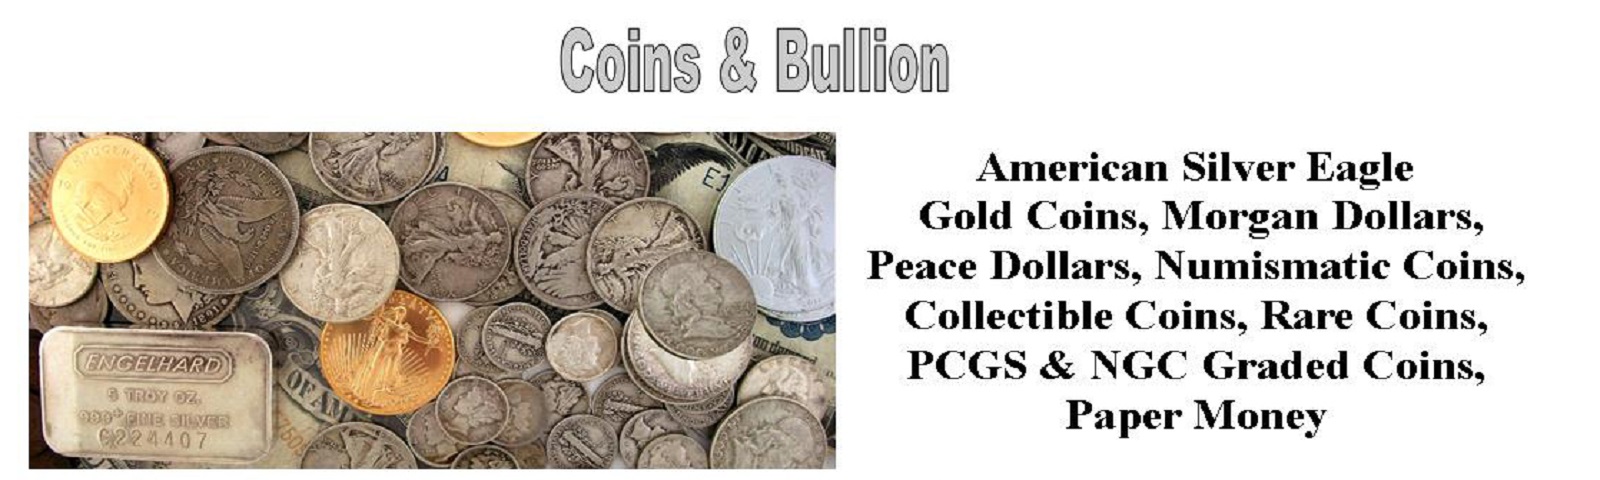 Coins & Bullion